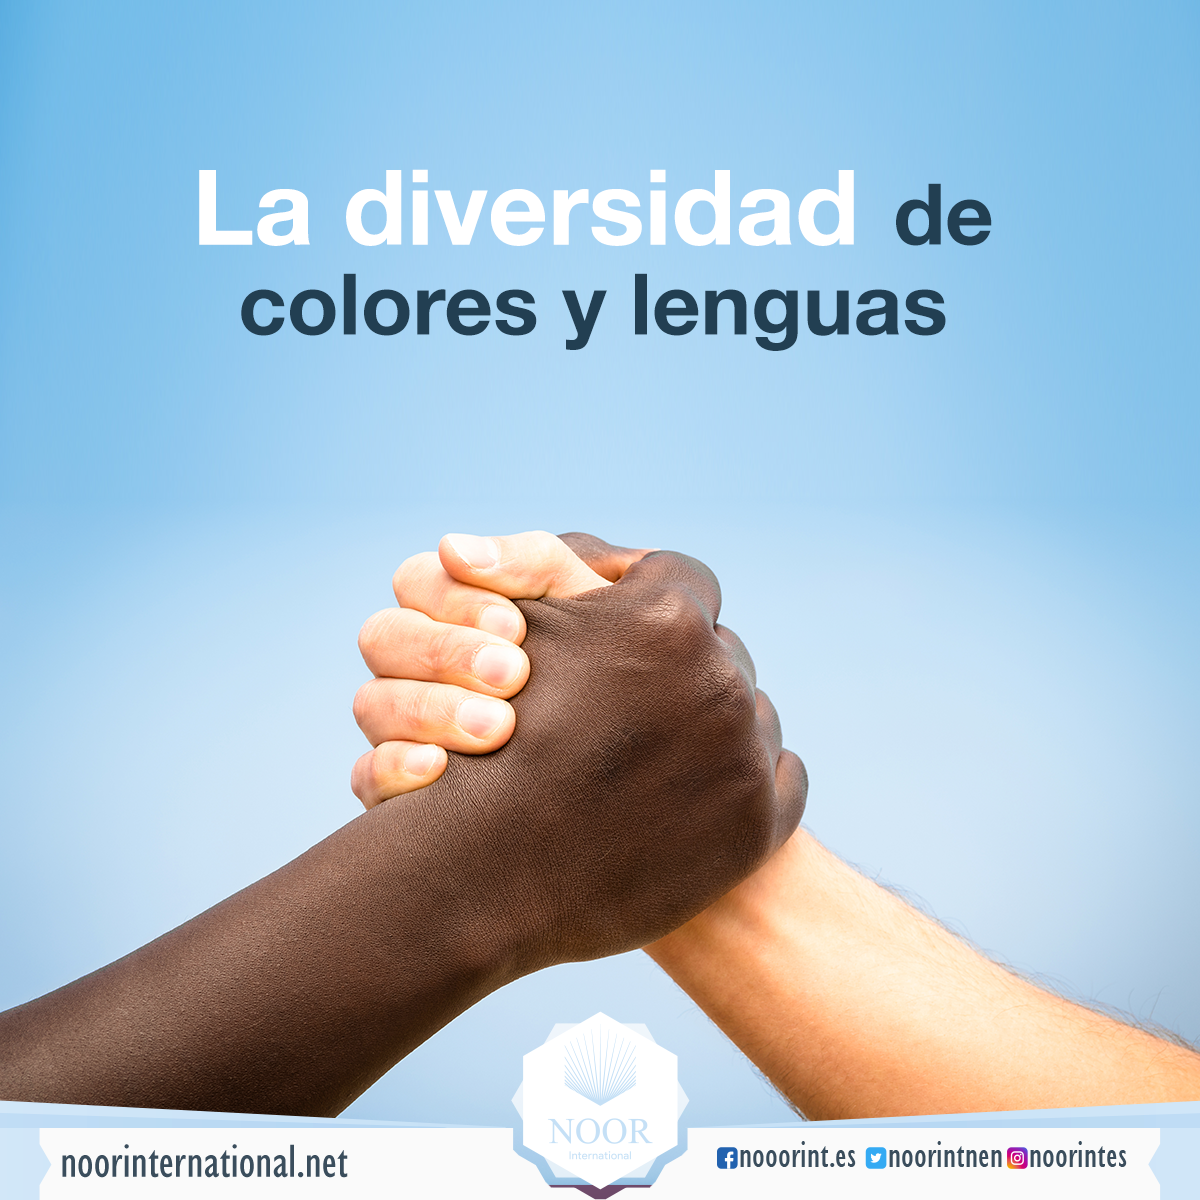 La diversidad de colores y lenguas